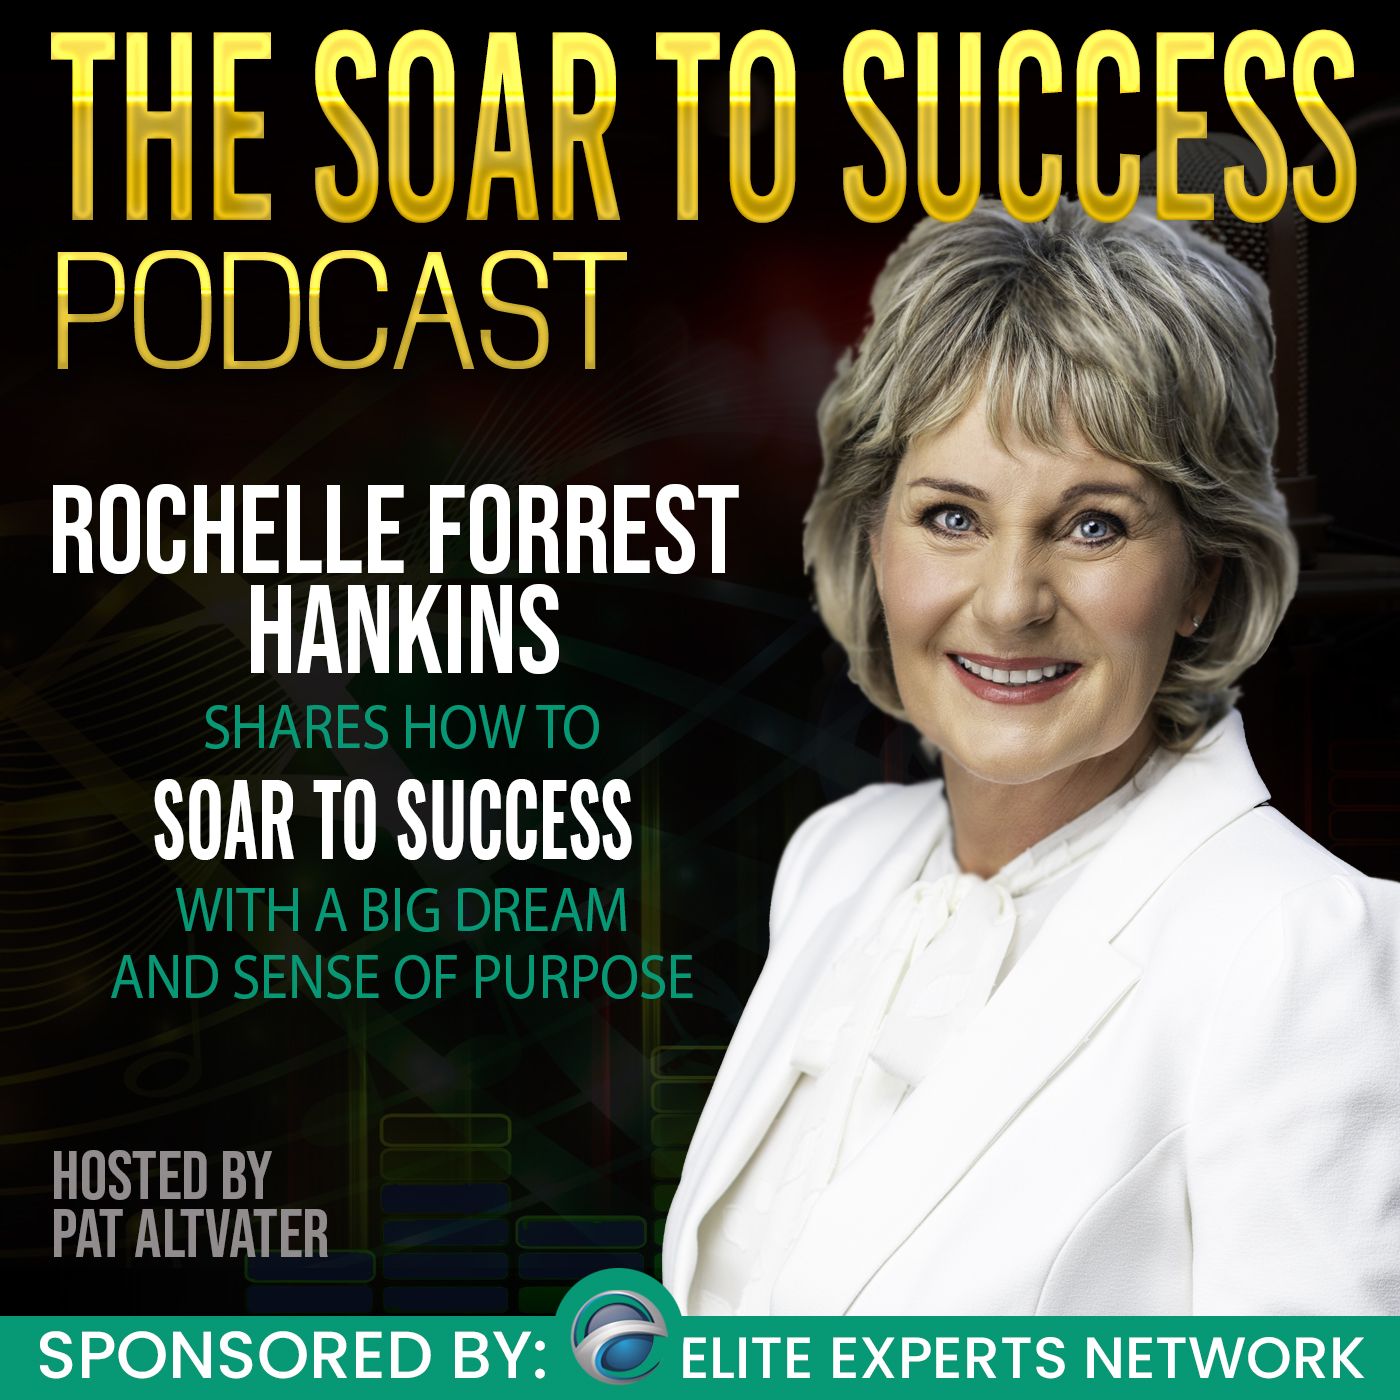 Rochelle Forrest Hankins’ LIGHT SHINES to Brighten the World